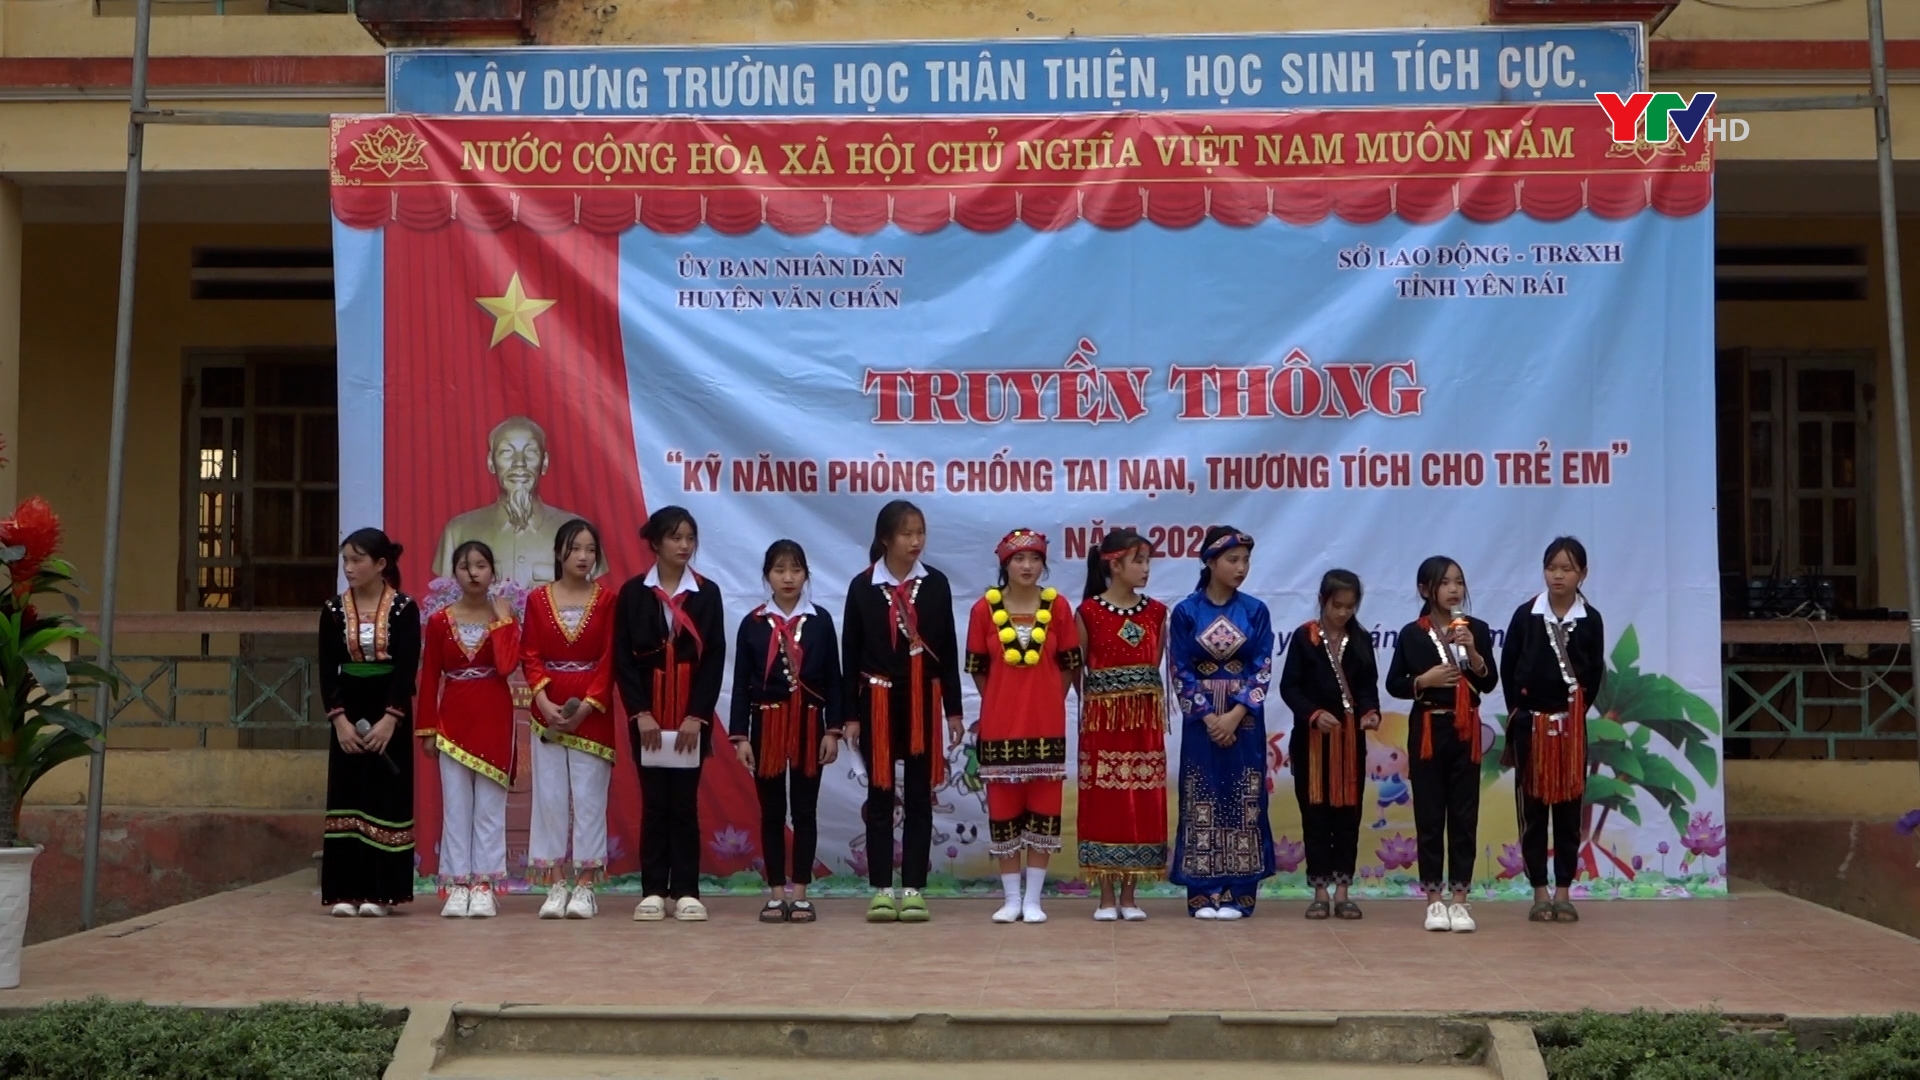 Truyền thông “Phòng chống tai nạn thương tích trẻ em năm 2023” tại xã Nậm Mười, huyện Văn Chấn